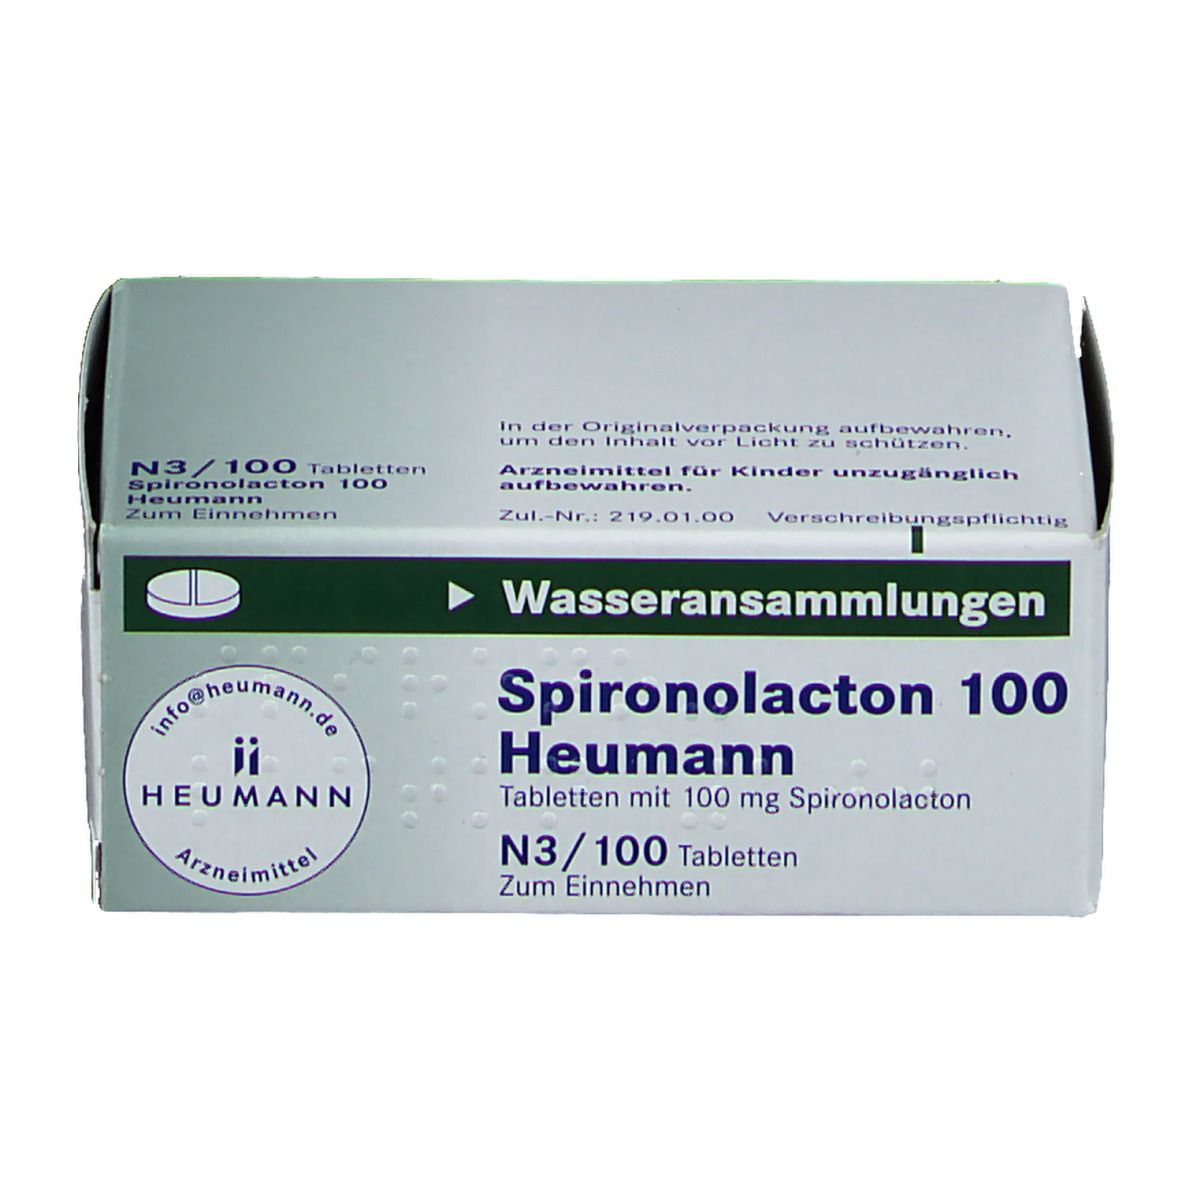 Spironolacton 100 Heumann